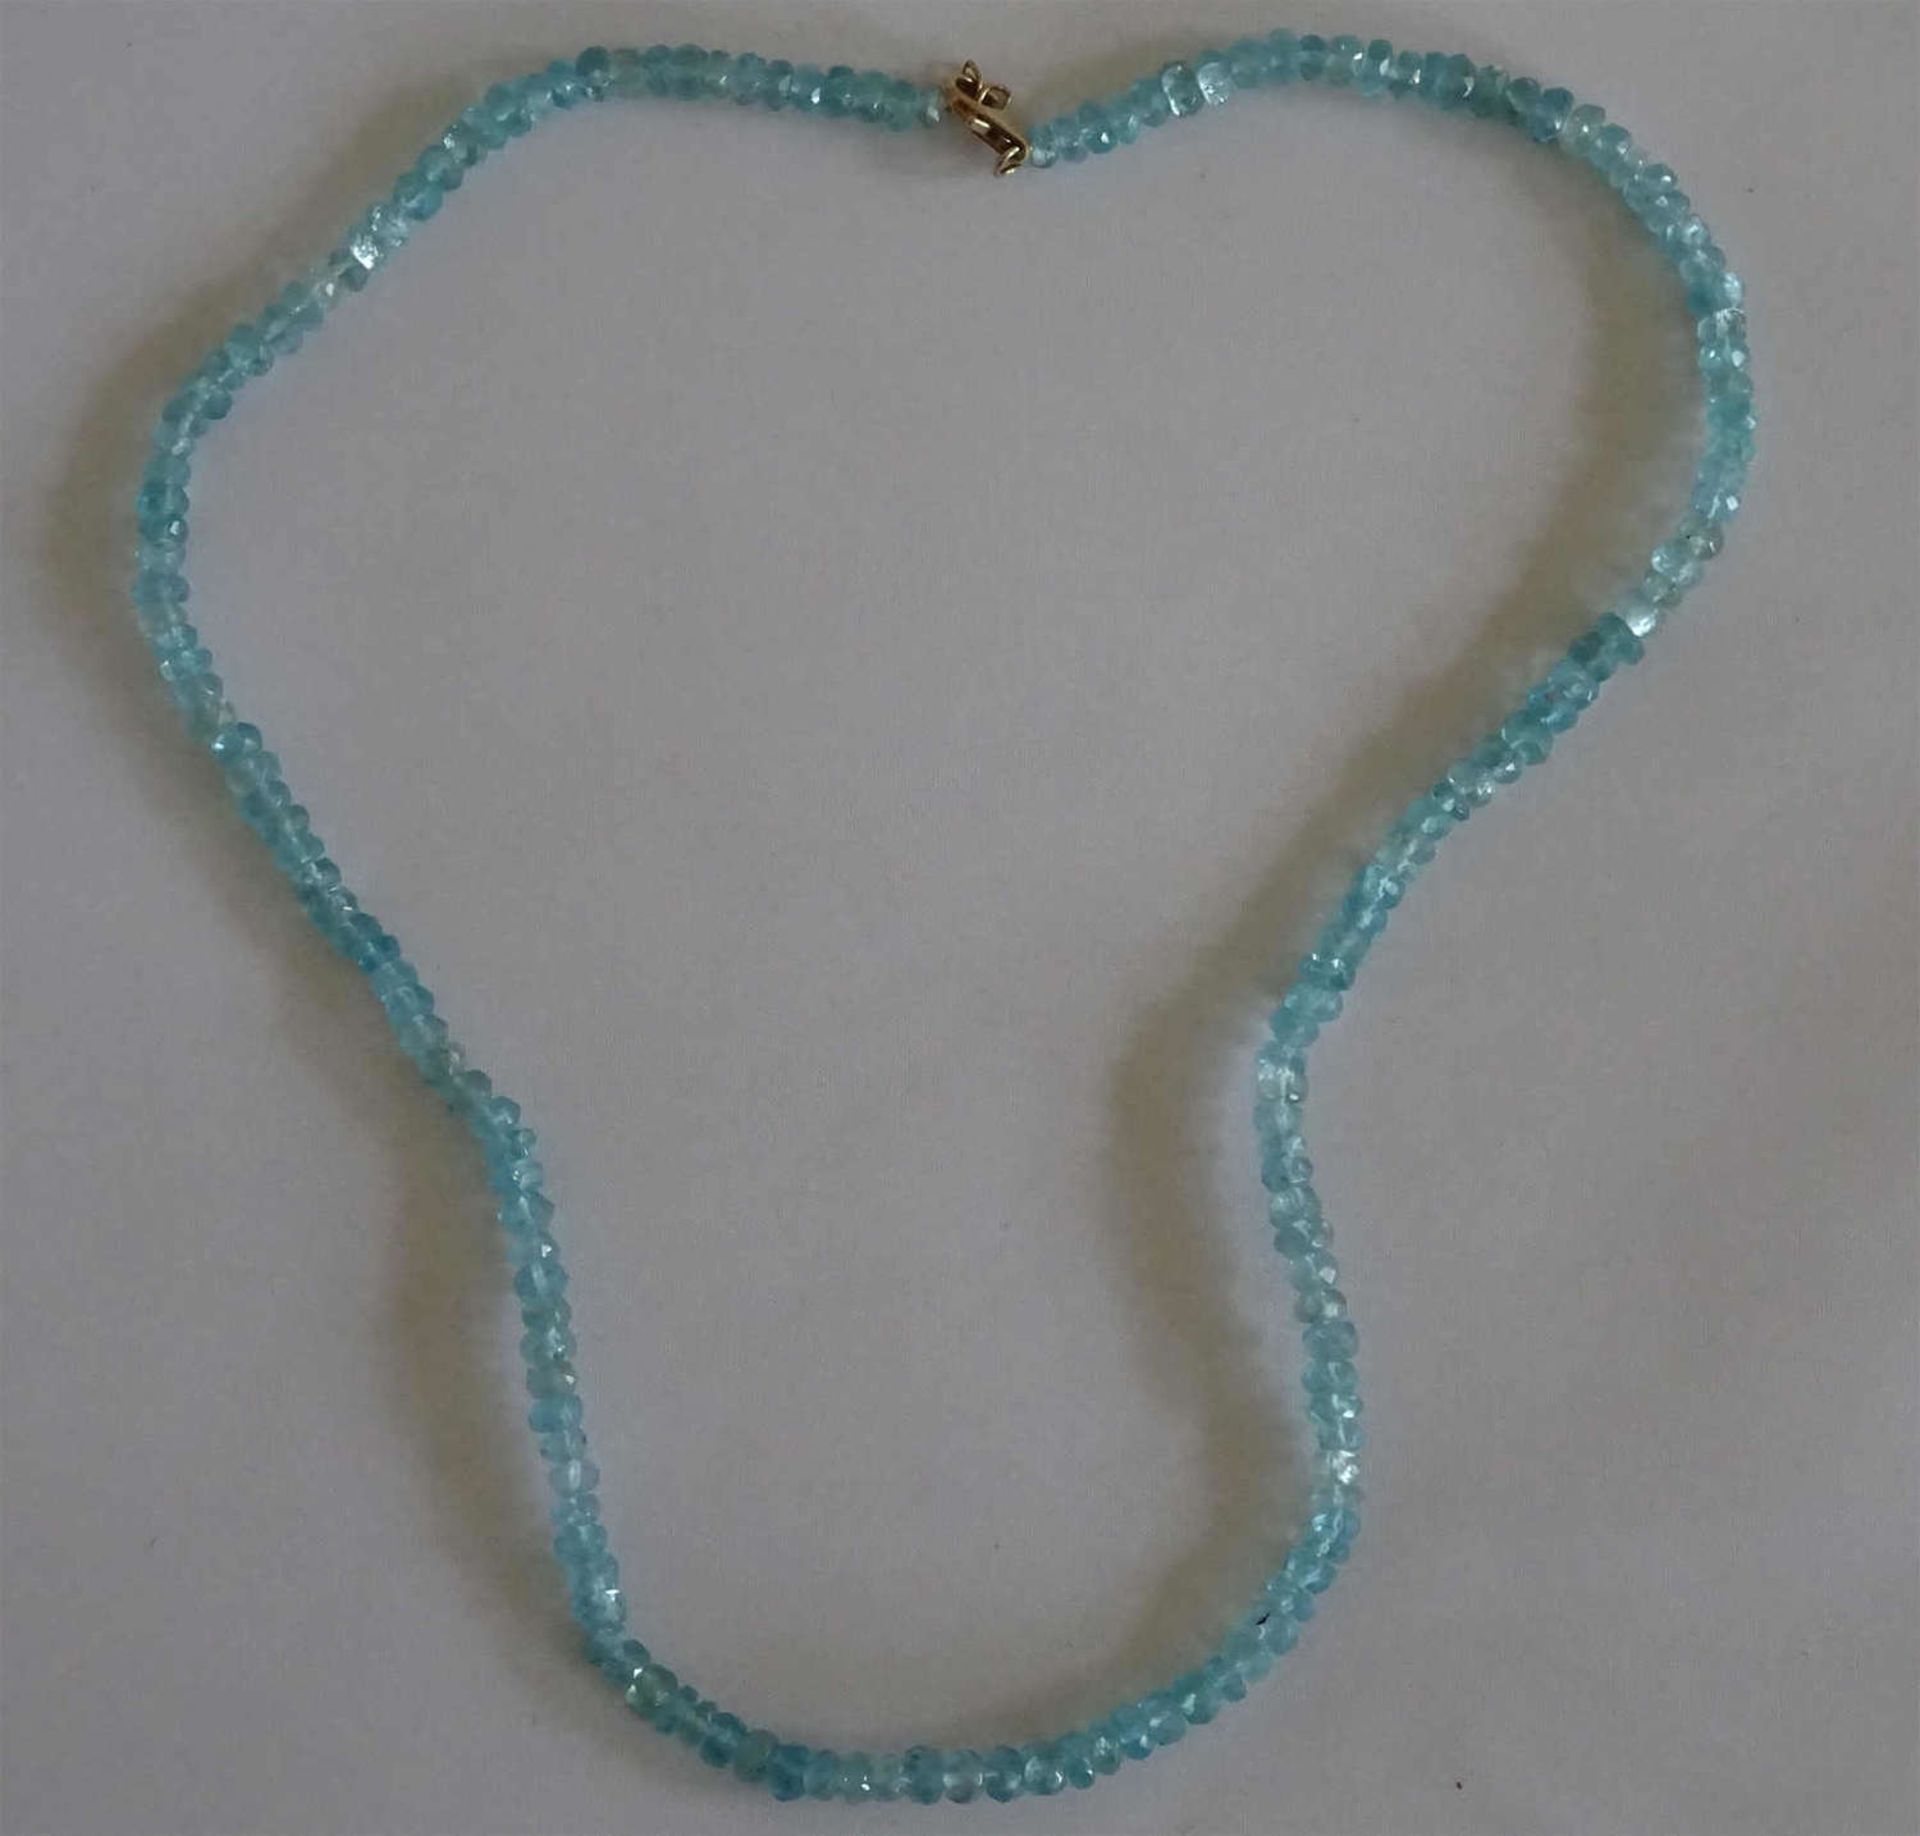 Aquamarinkette mit 585er Goldverschluß. Guter Zustand.Aquamarine necklace with 585 gold clasp.